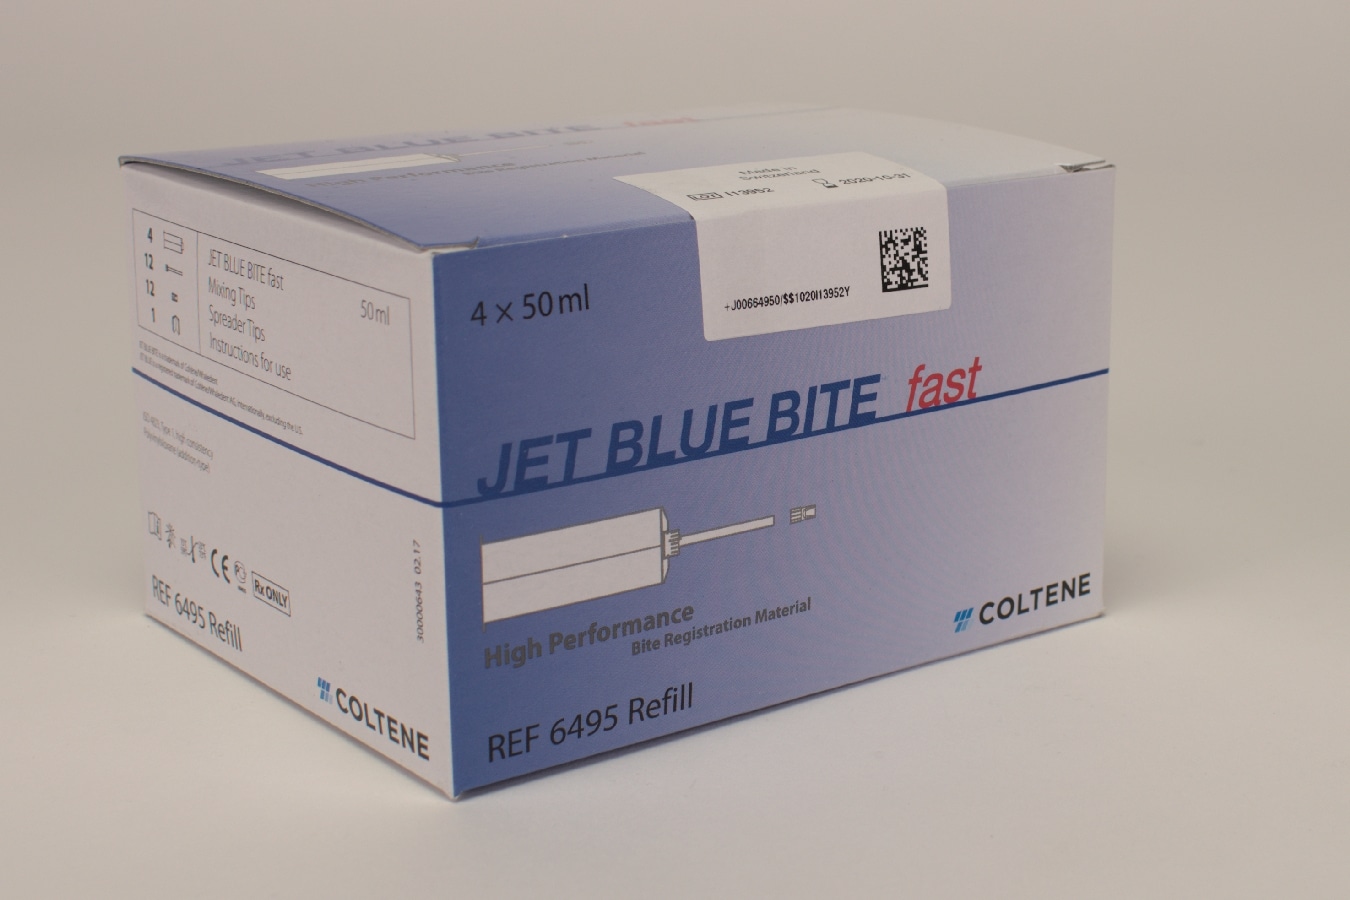 Jet Blue Bite Fast 4x50ml